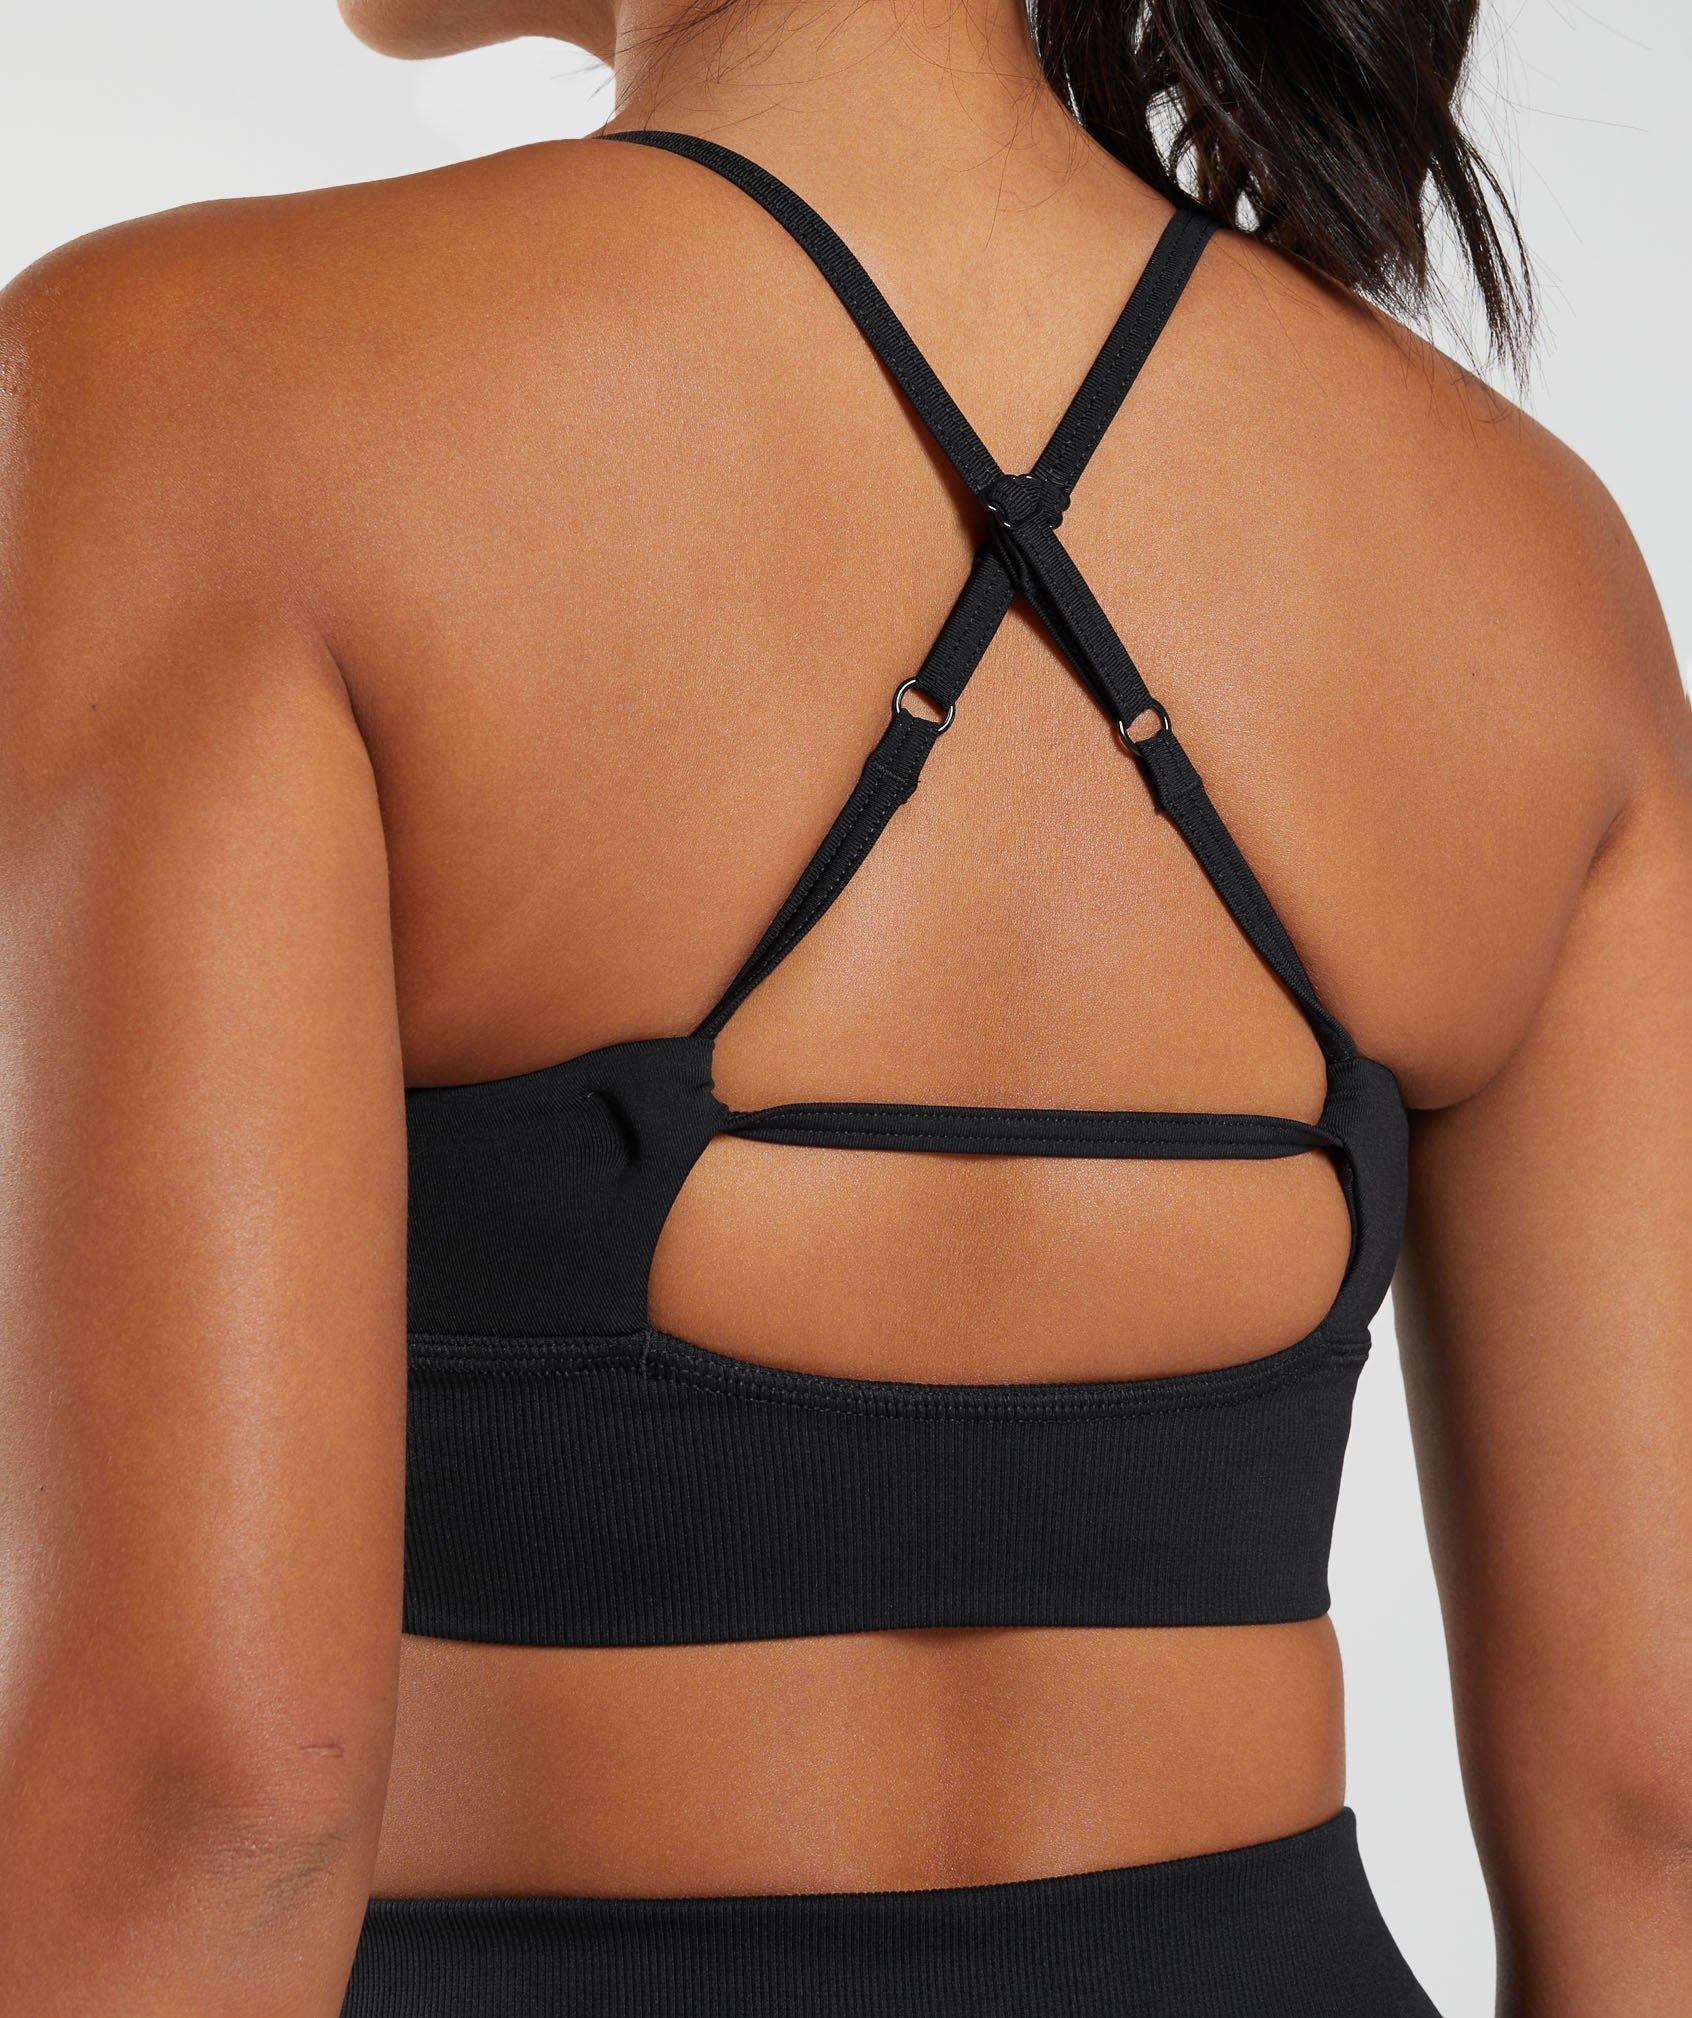 Gymshark Open Back Sports Bra Black straps cut for - Depop